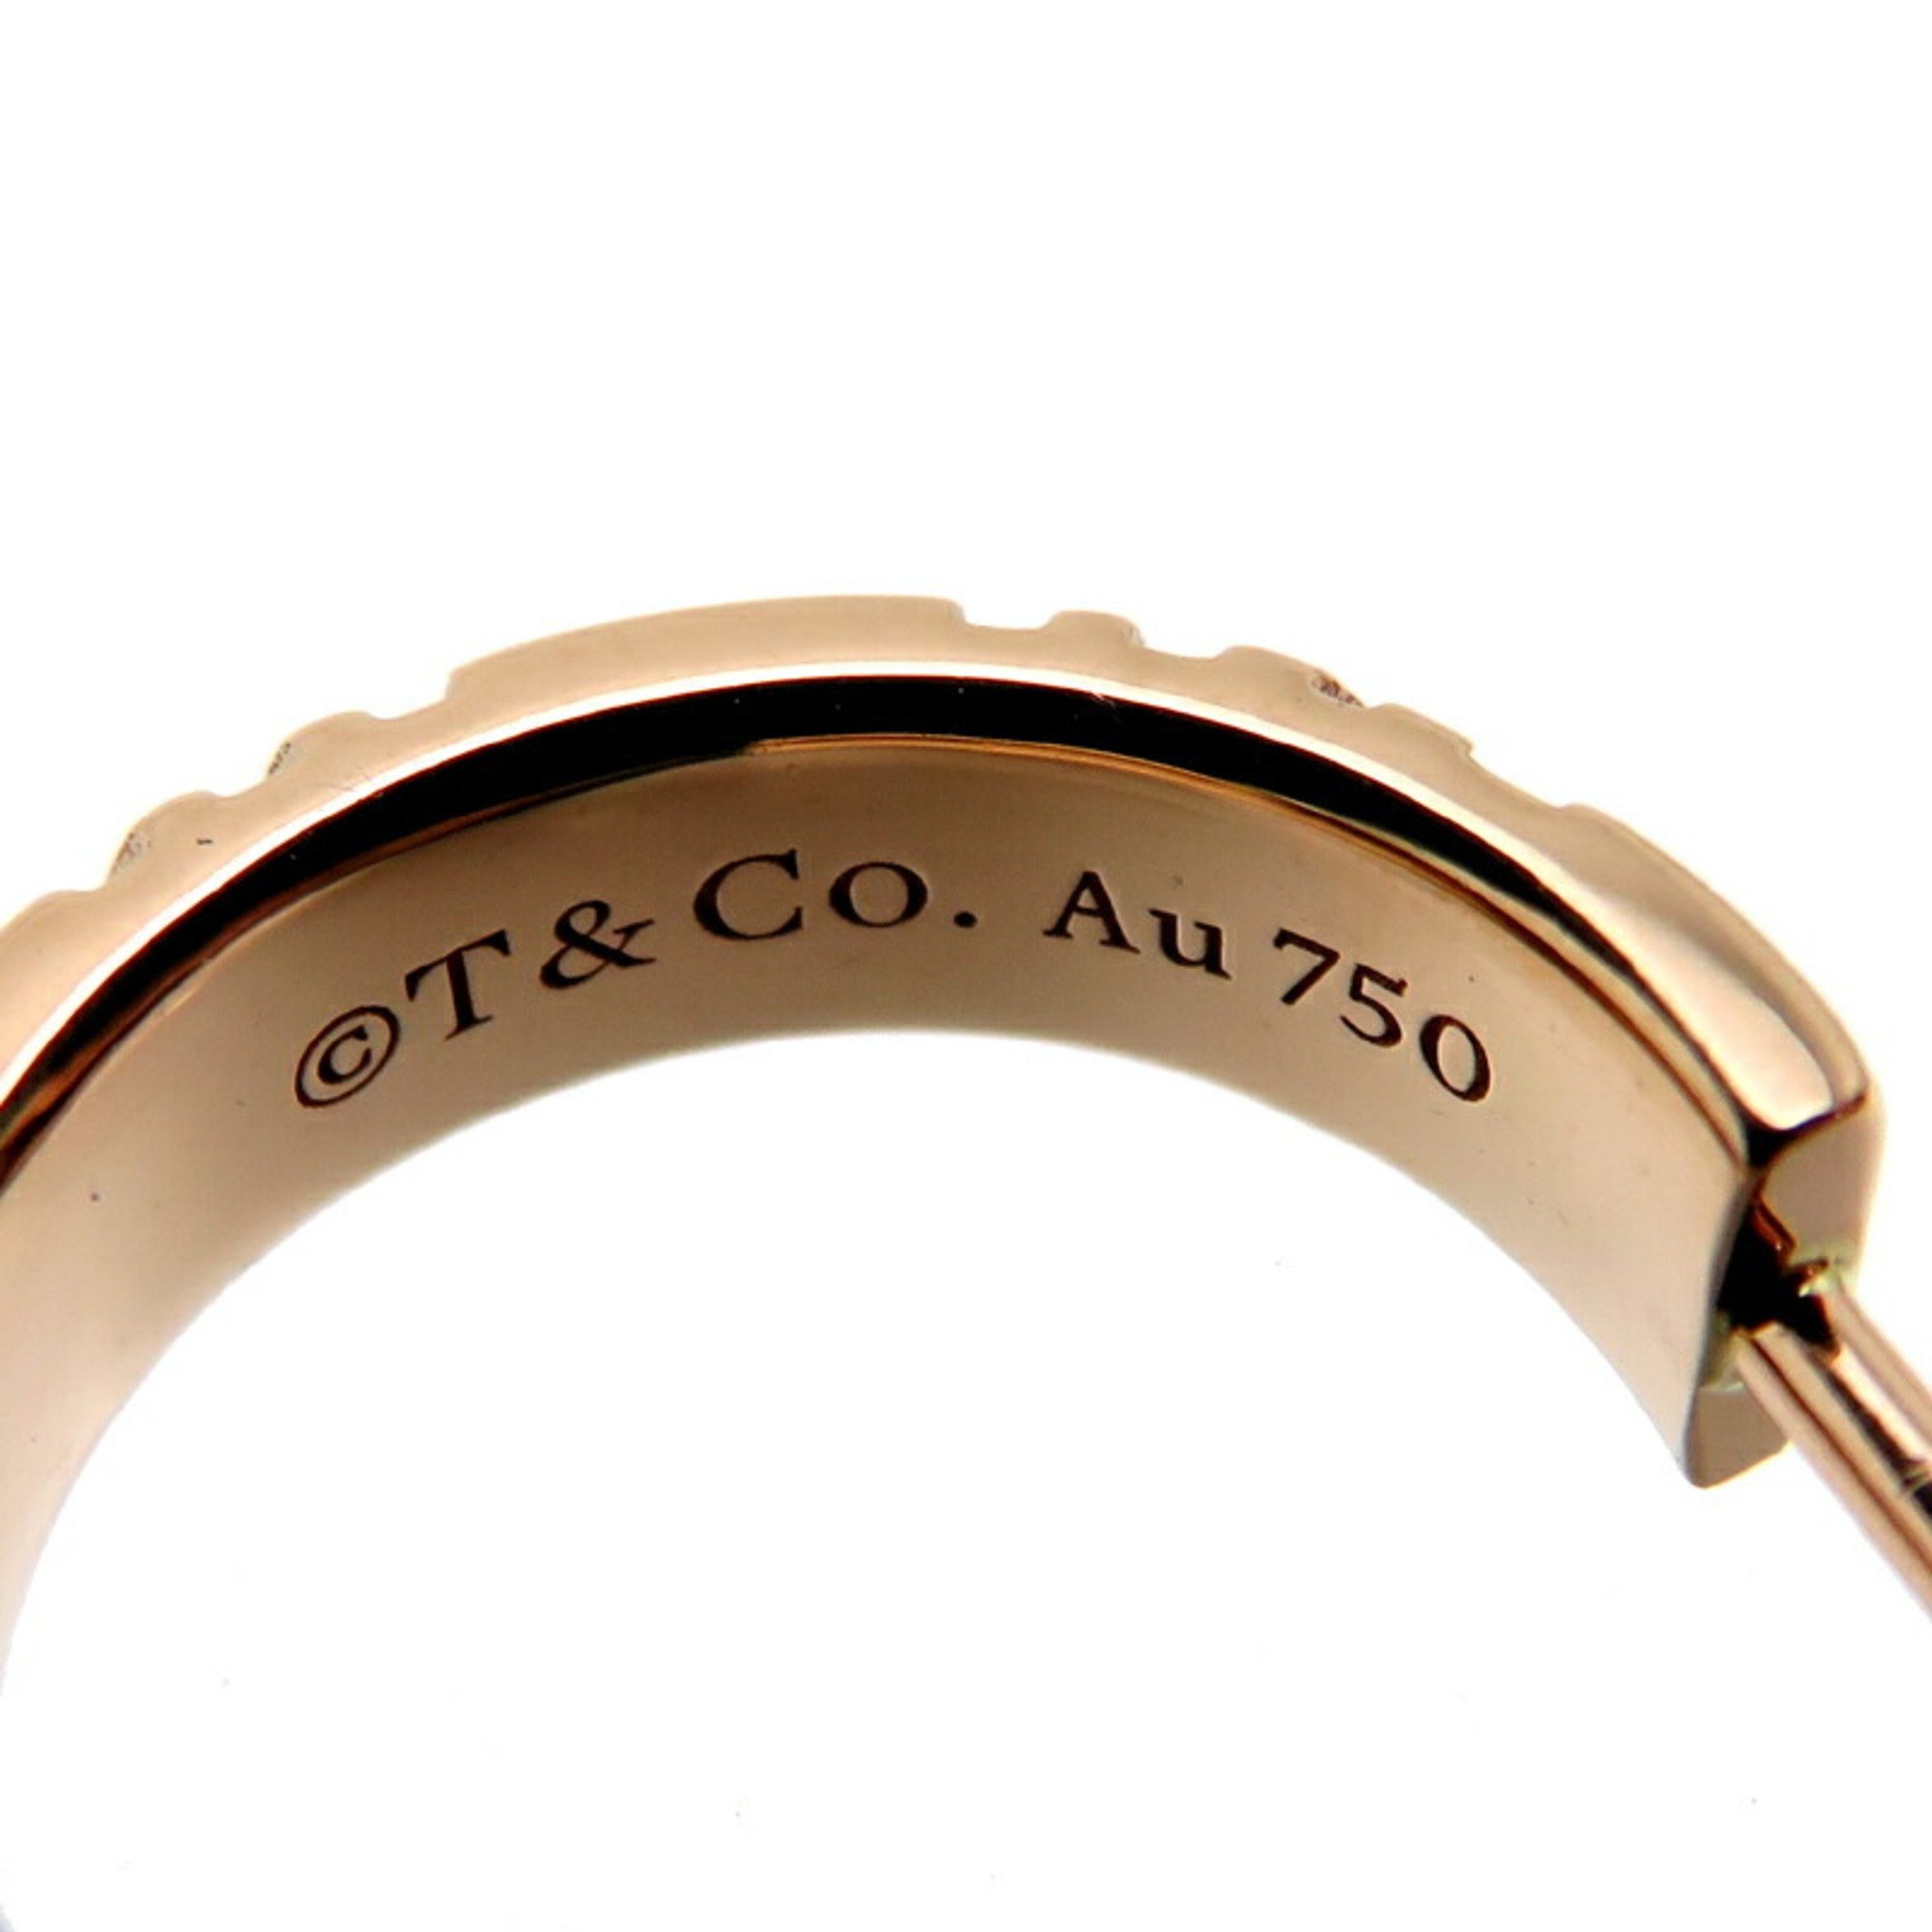 Tiffany Atlas X-Hoop Small Women's Earrings 750 Pink Gold